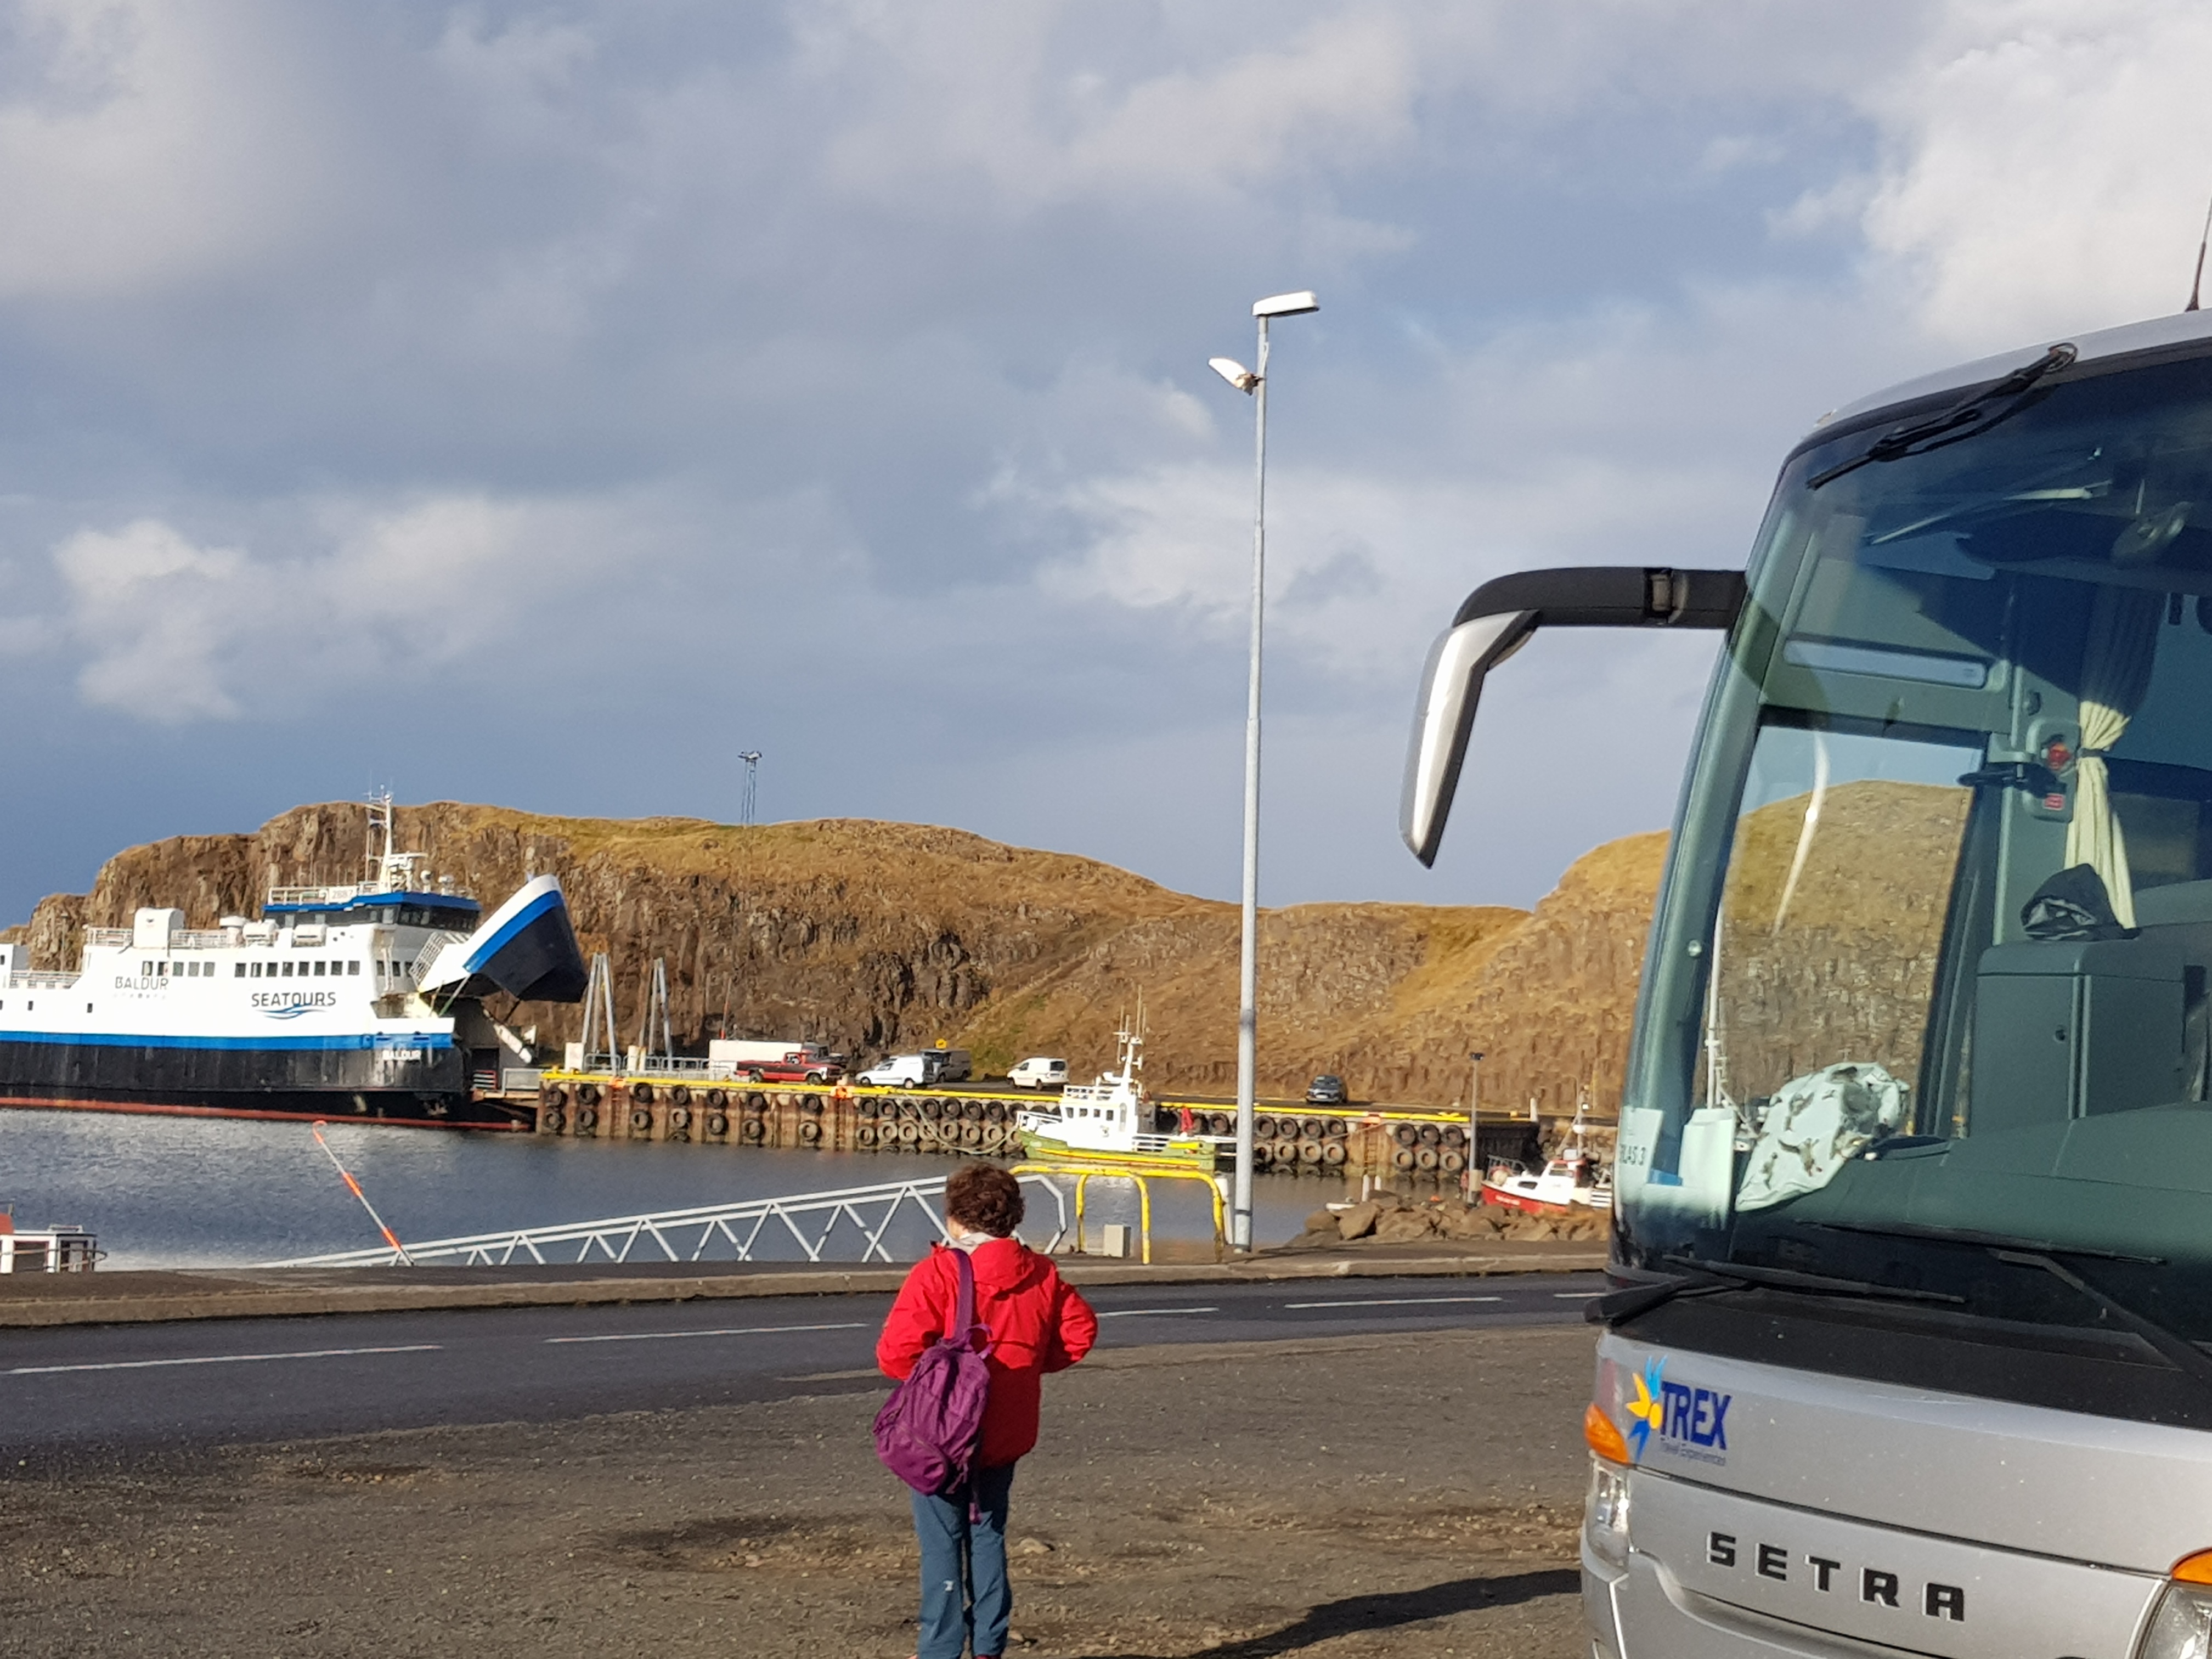 Tourism impact in Icelandic communities